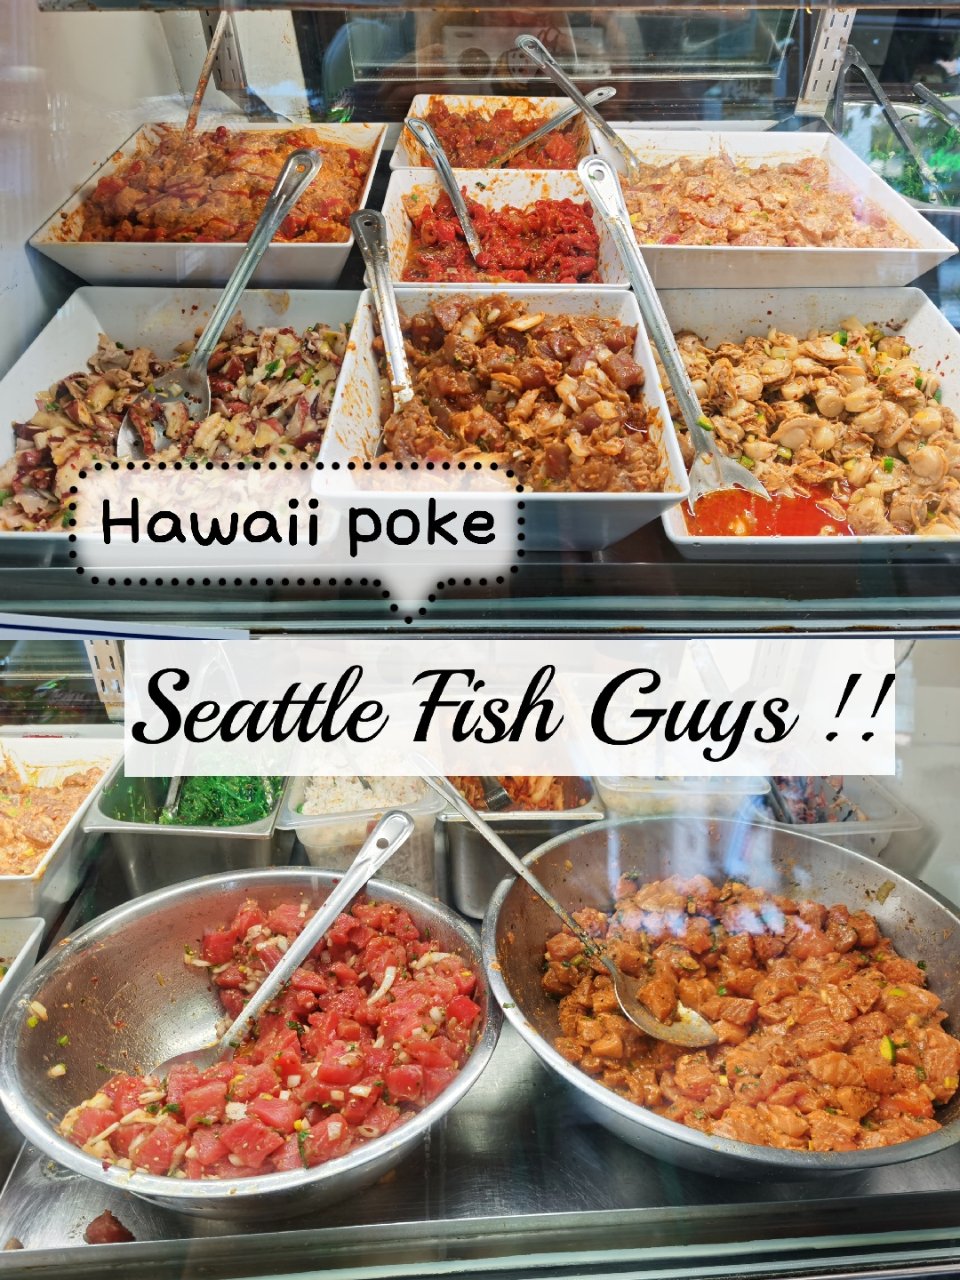 西雅图❤️也有最正宗的夏威夷poke小店...